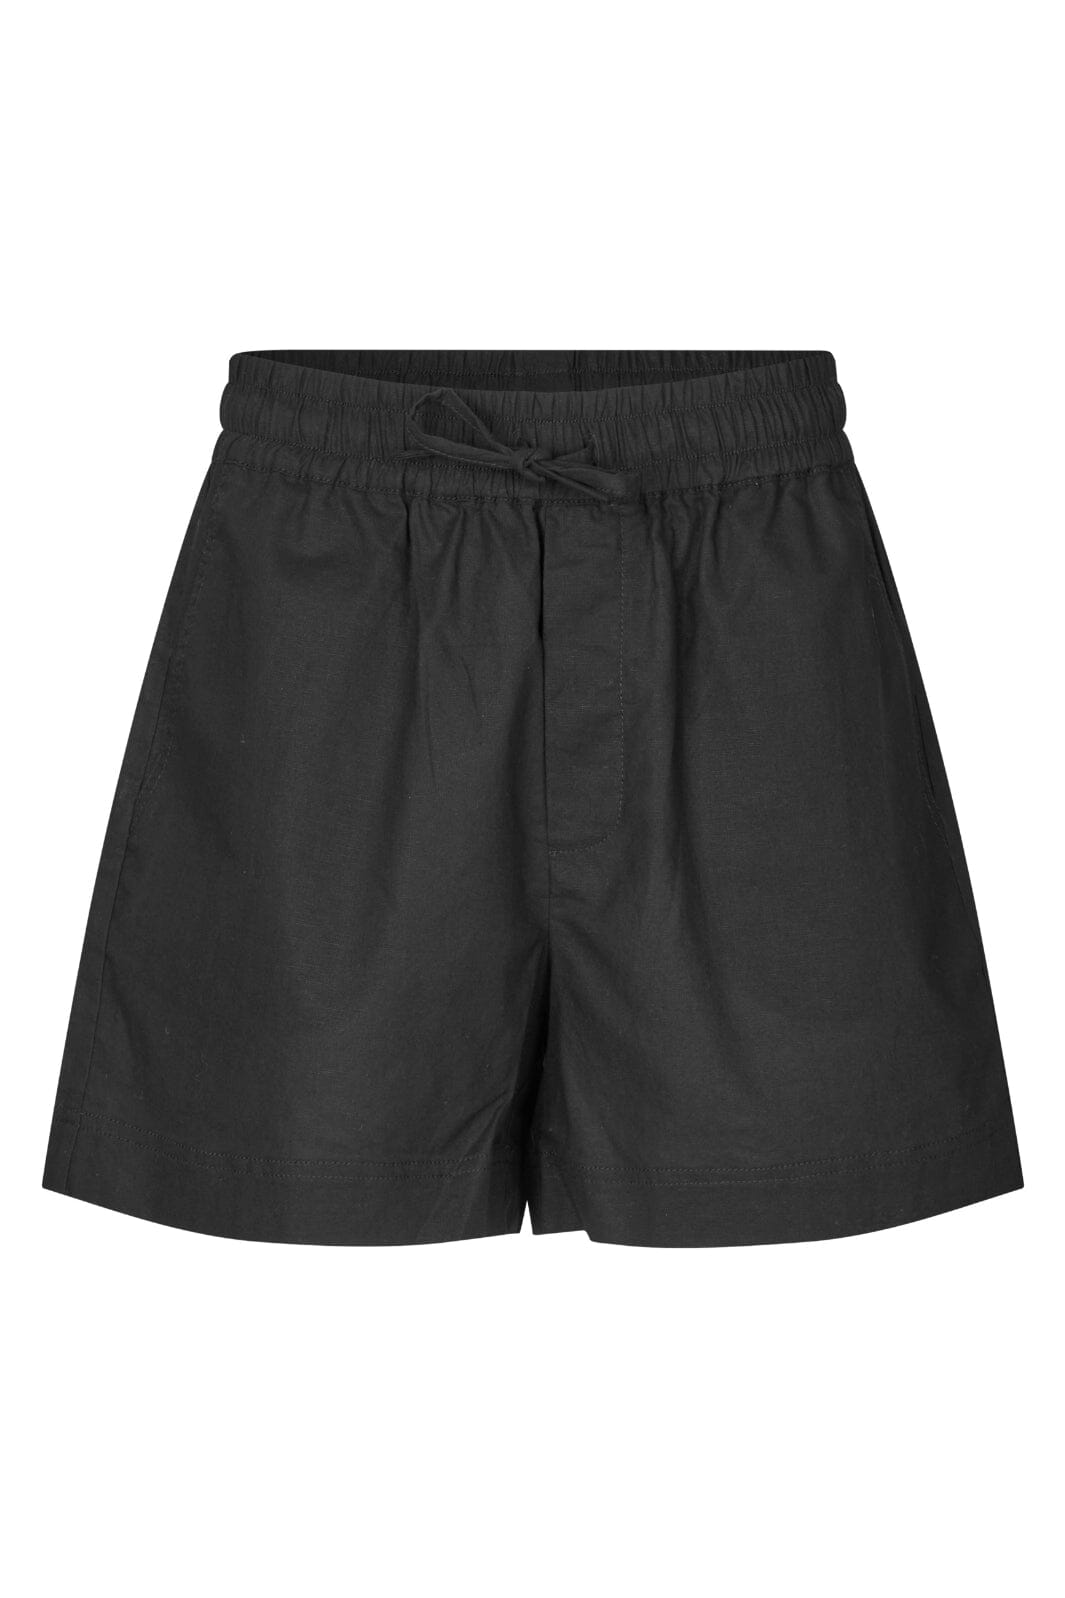 Mbym - Meris-M - 880 Black Shorts 